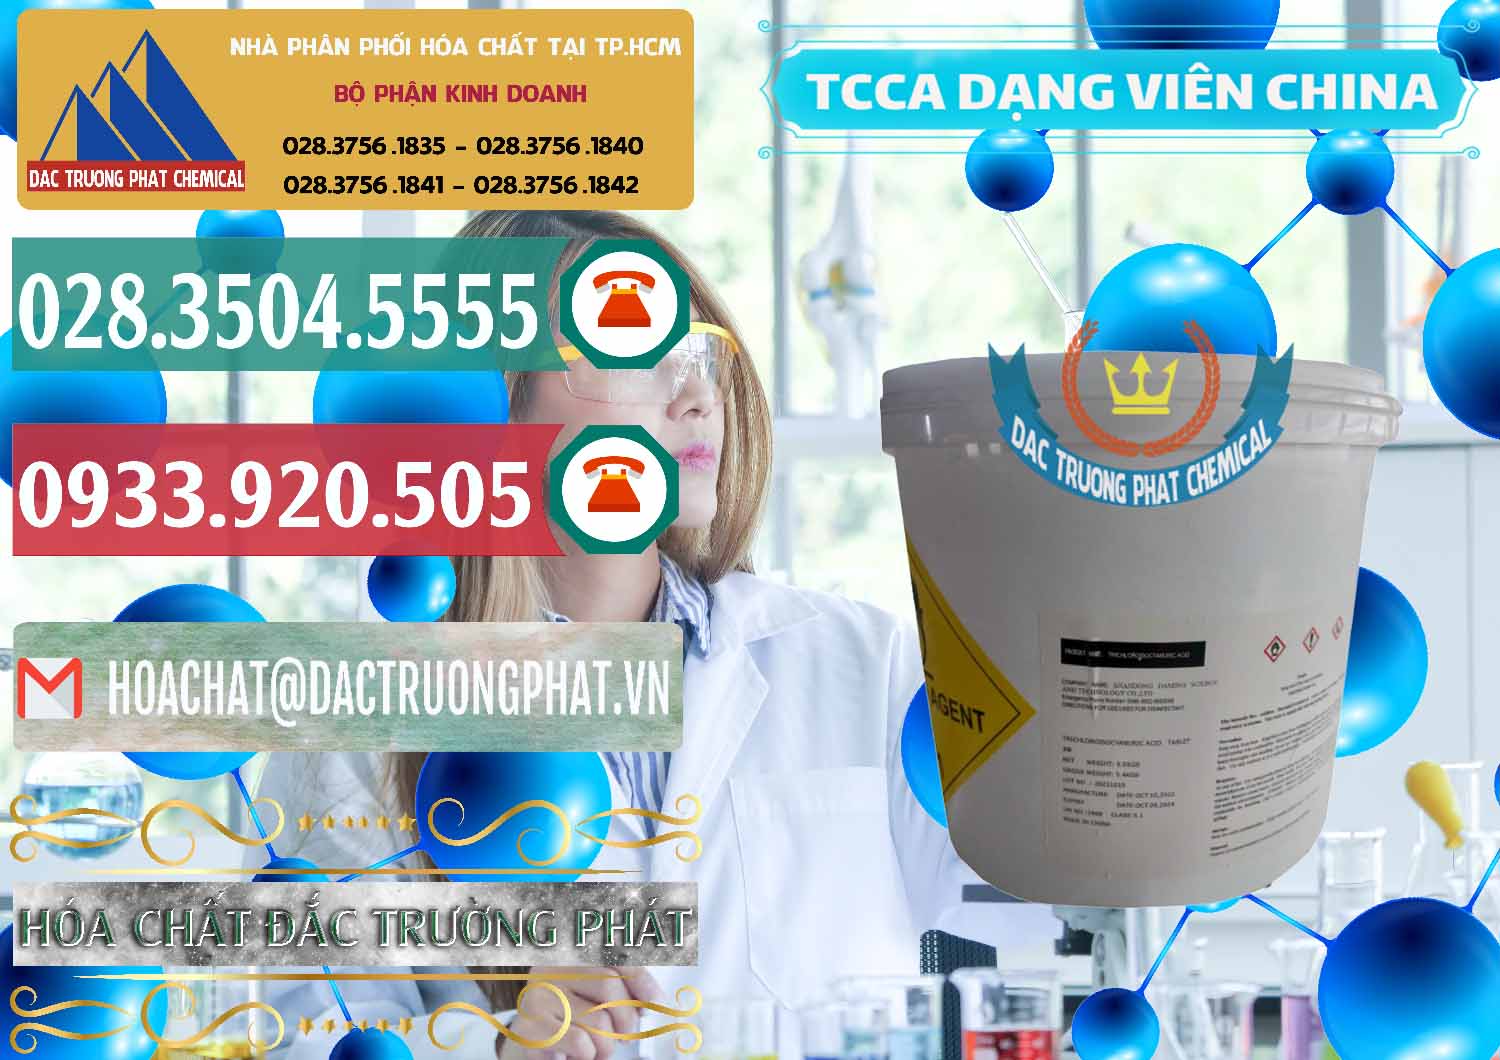 Cty bán _ cung ứng TCCA - Acid Trichloroisocyanuric Dạng Viên Thùng 5kg Trung Quốc China - 0379 - Cty chuyên cung ứng & phân phối hóa chất tại TP.HCM - muabanhoachat.vn